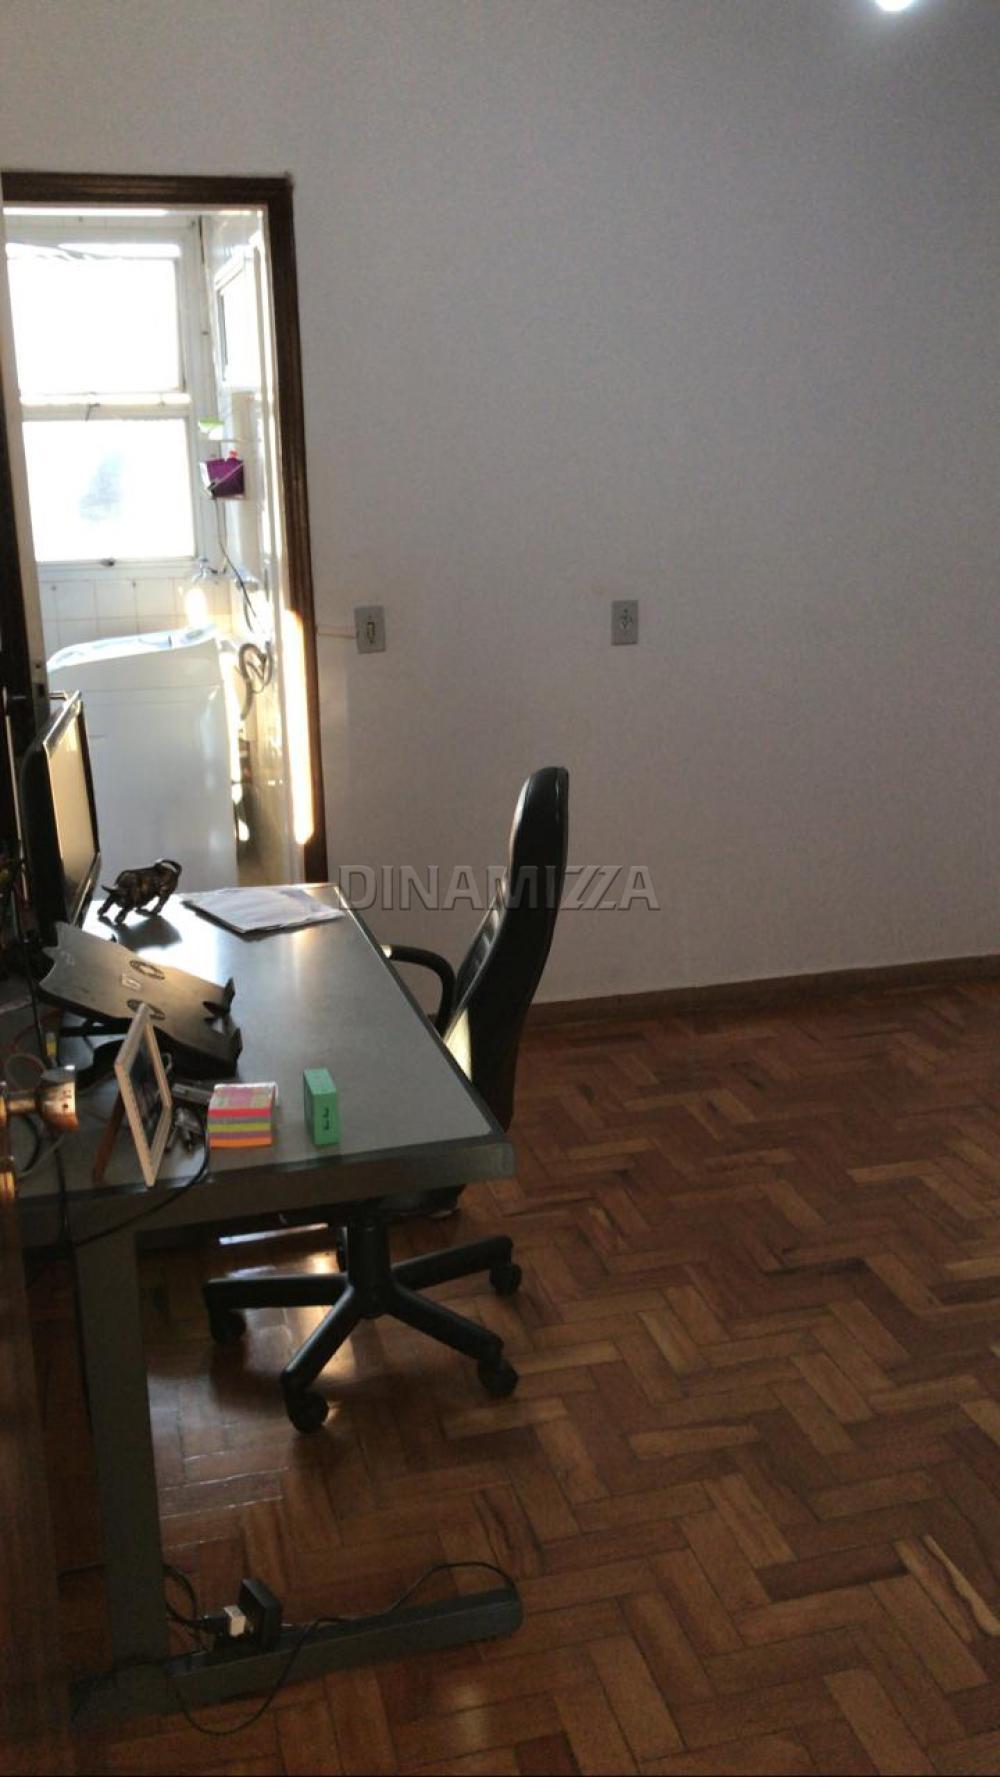 Comprar Apartamento / Padrão em Uberaba R$ 310.000,00 - Foto 17